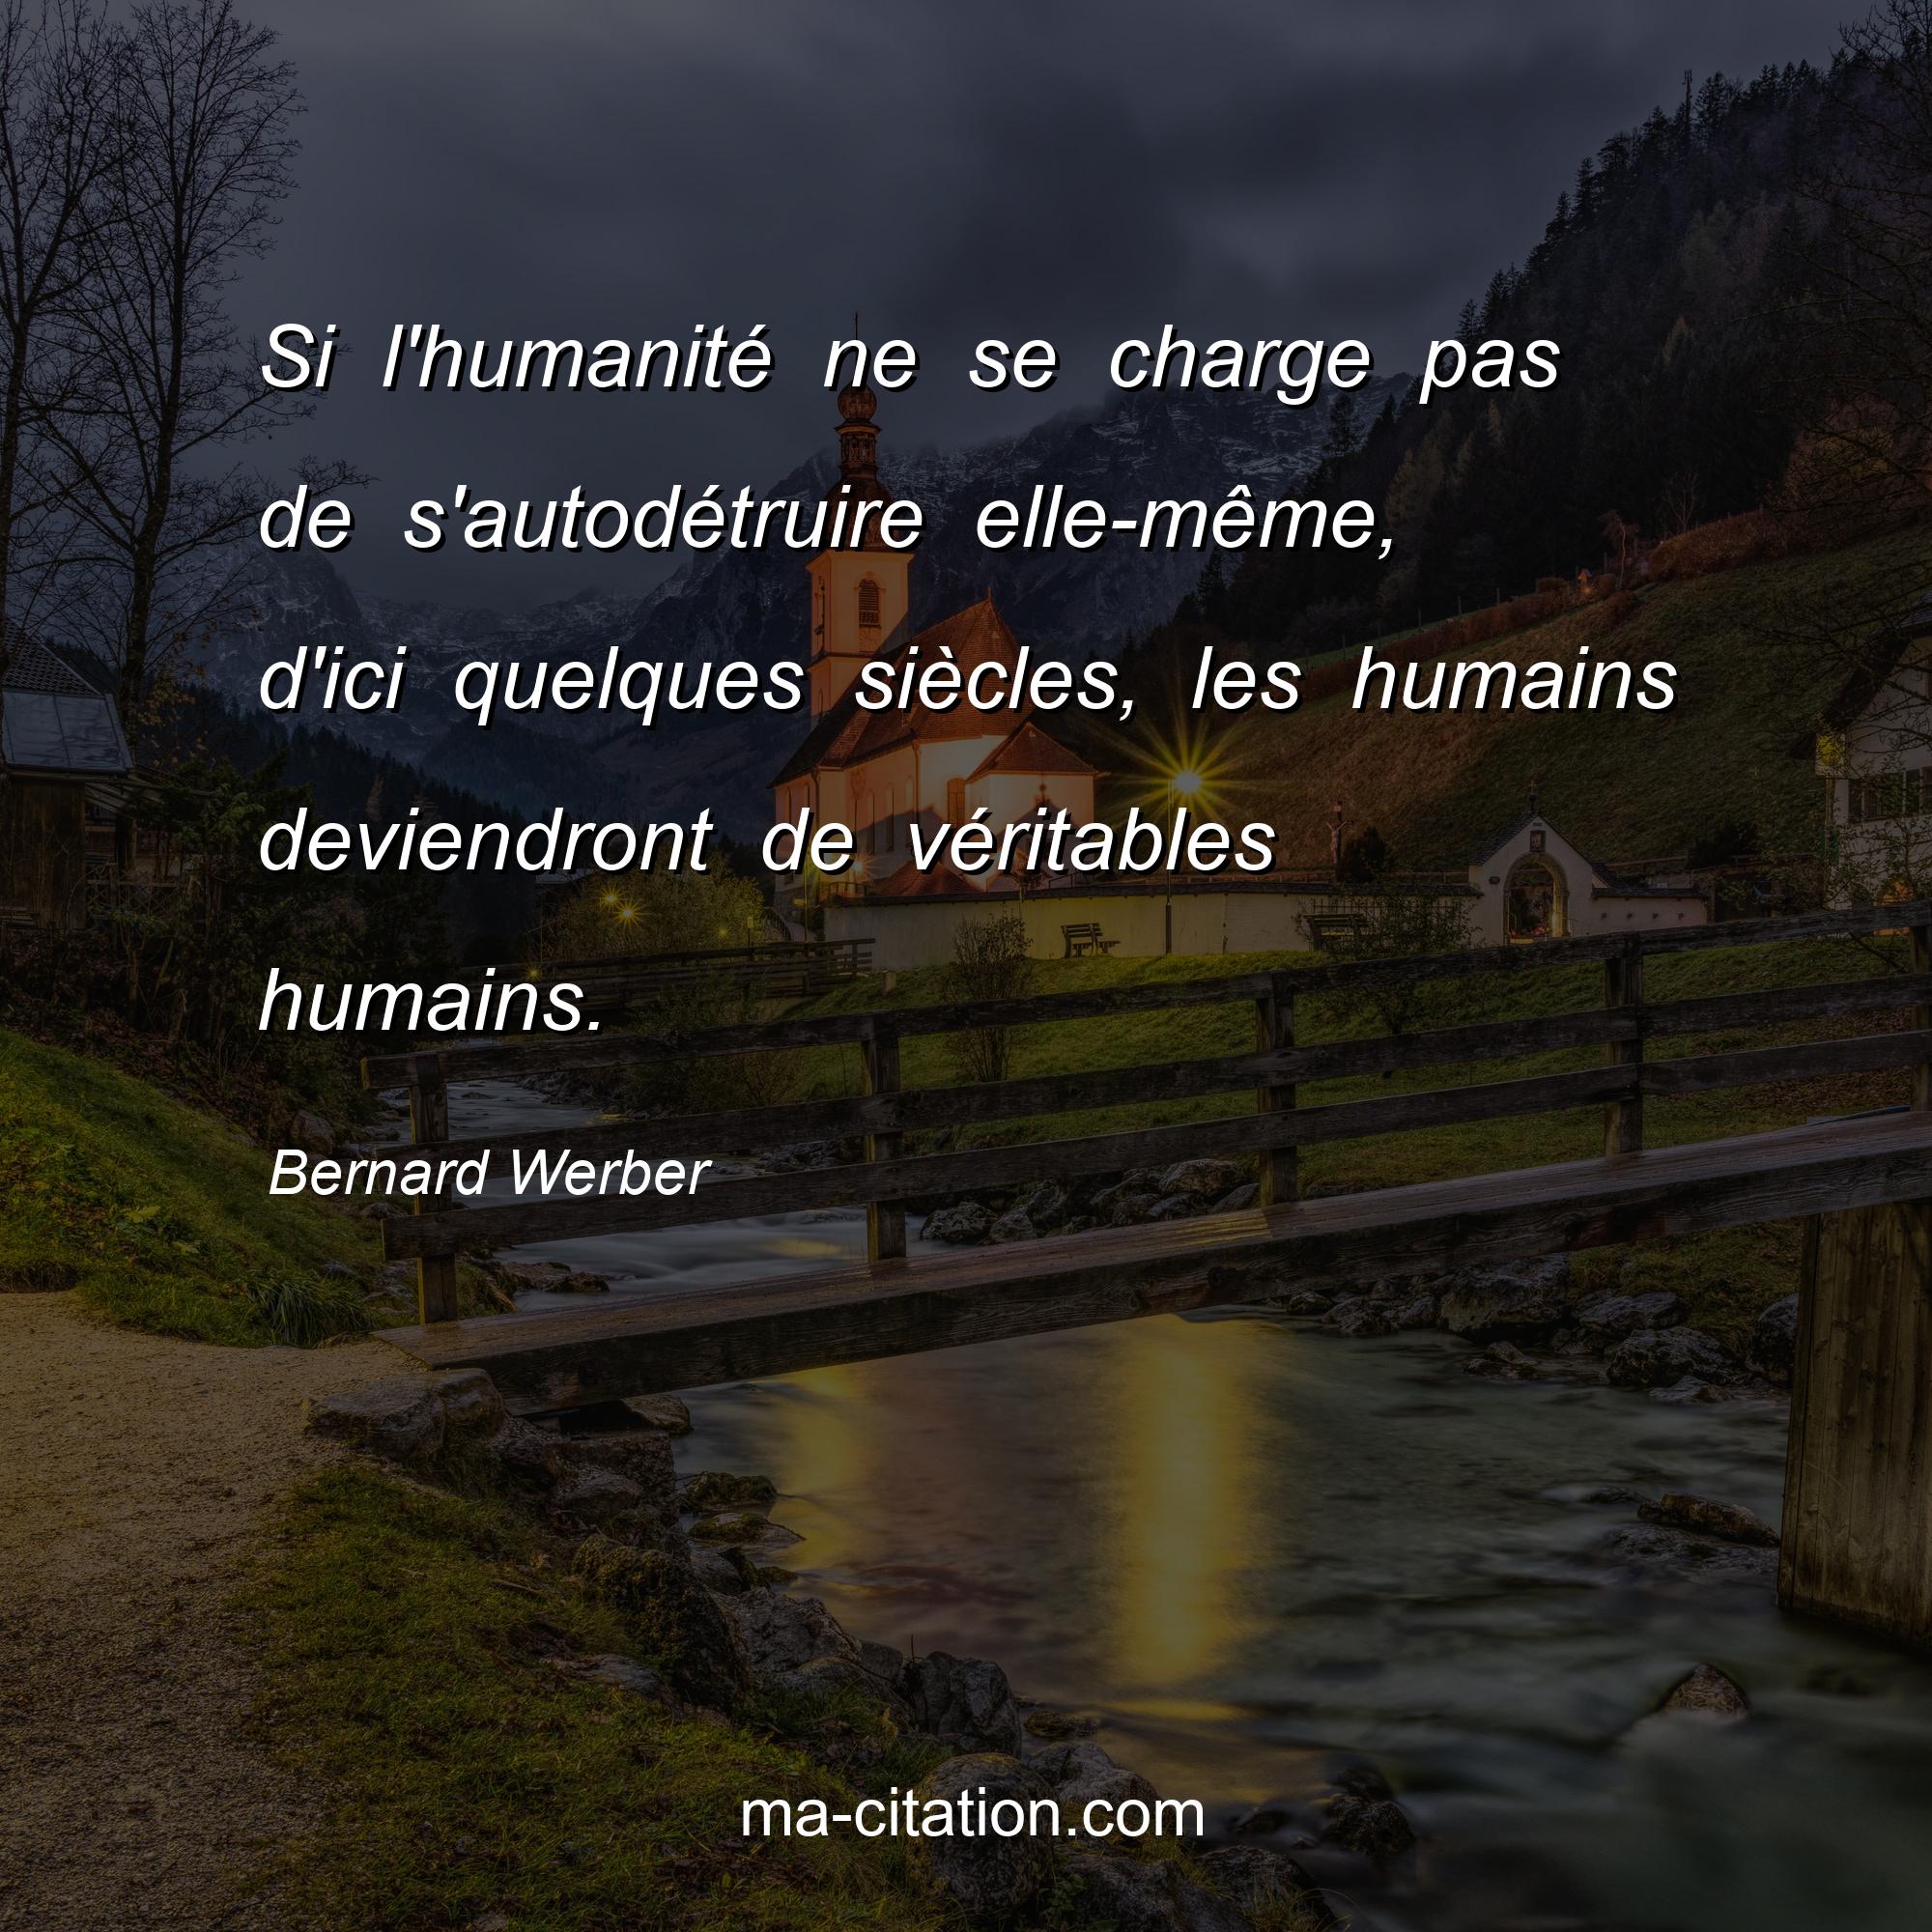 Bernard Werber : Si l'humanité ne se charge pas de s'autodétruire elle-même, d'ici quelques siècles, les humains deviendront de véritables humains.